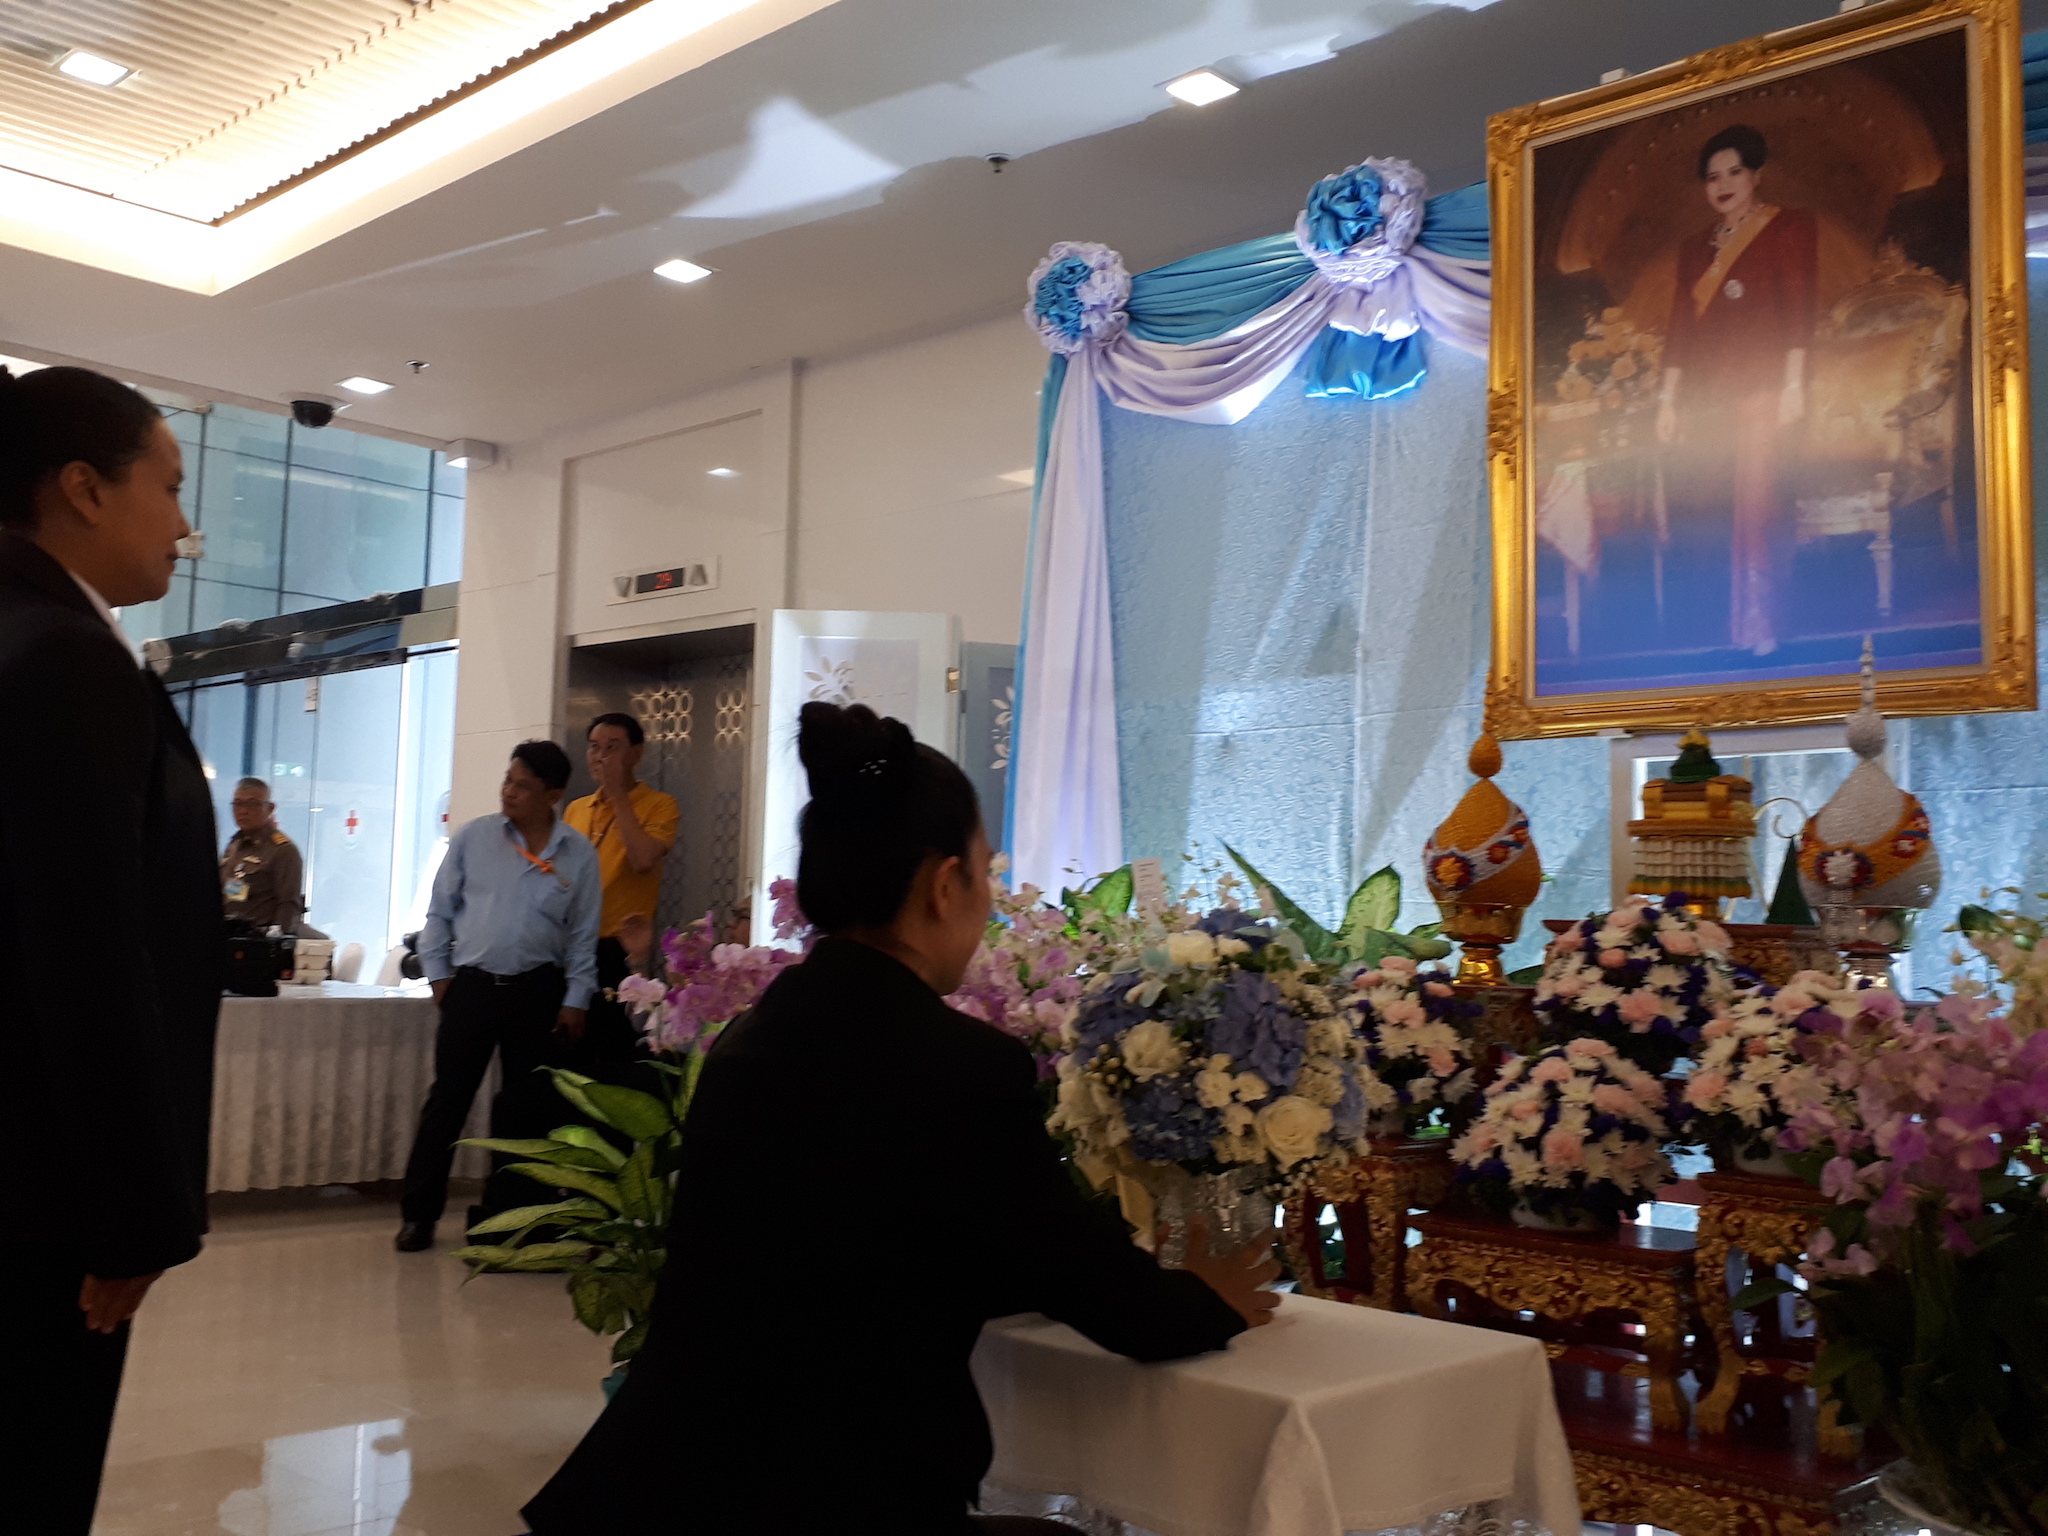 กิจกรรมลงนามถวายพระพรสมเด็จพระนางเจ้าสิริกิติ์  วันที่ 23  พฤษภาคม 2562 ณ อาคารภูมิสิริมังคลานุสรณ์ โรงพยาบาลจุฬาลงกรณ์ สภากาชาดไทย กรุงเทพมหานคร